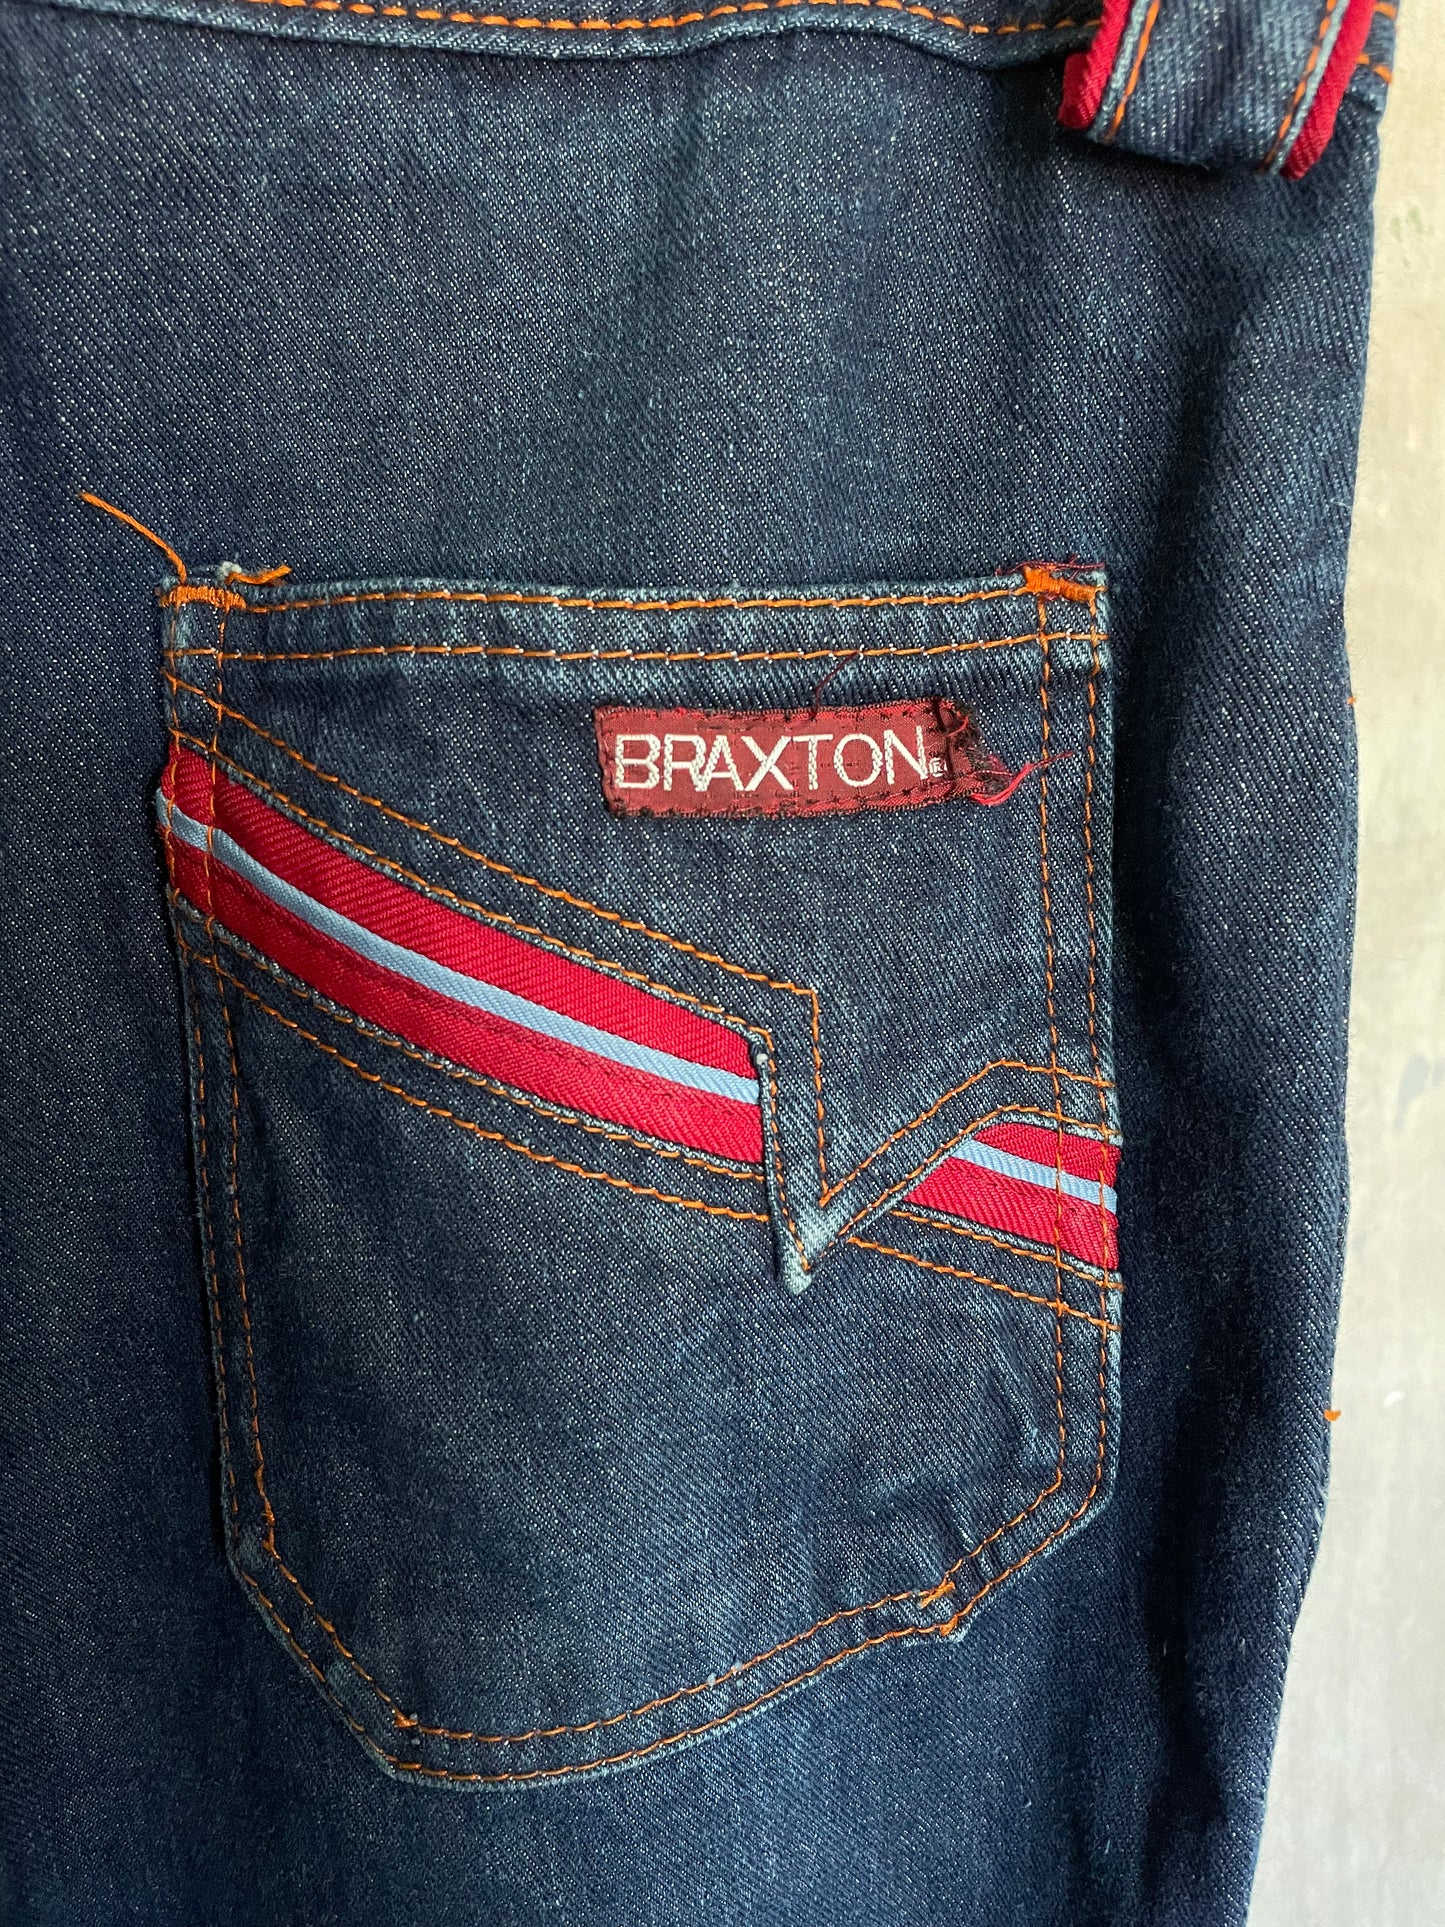 70 Braxton Dark Wash Jeans